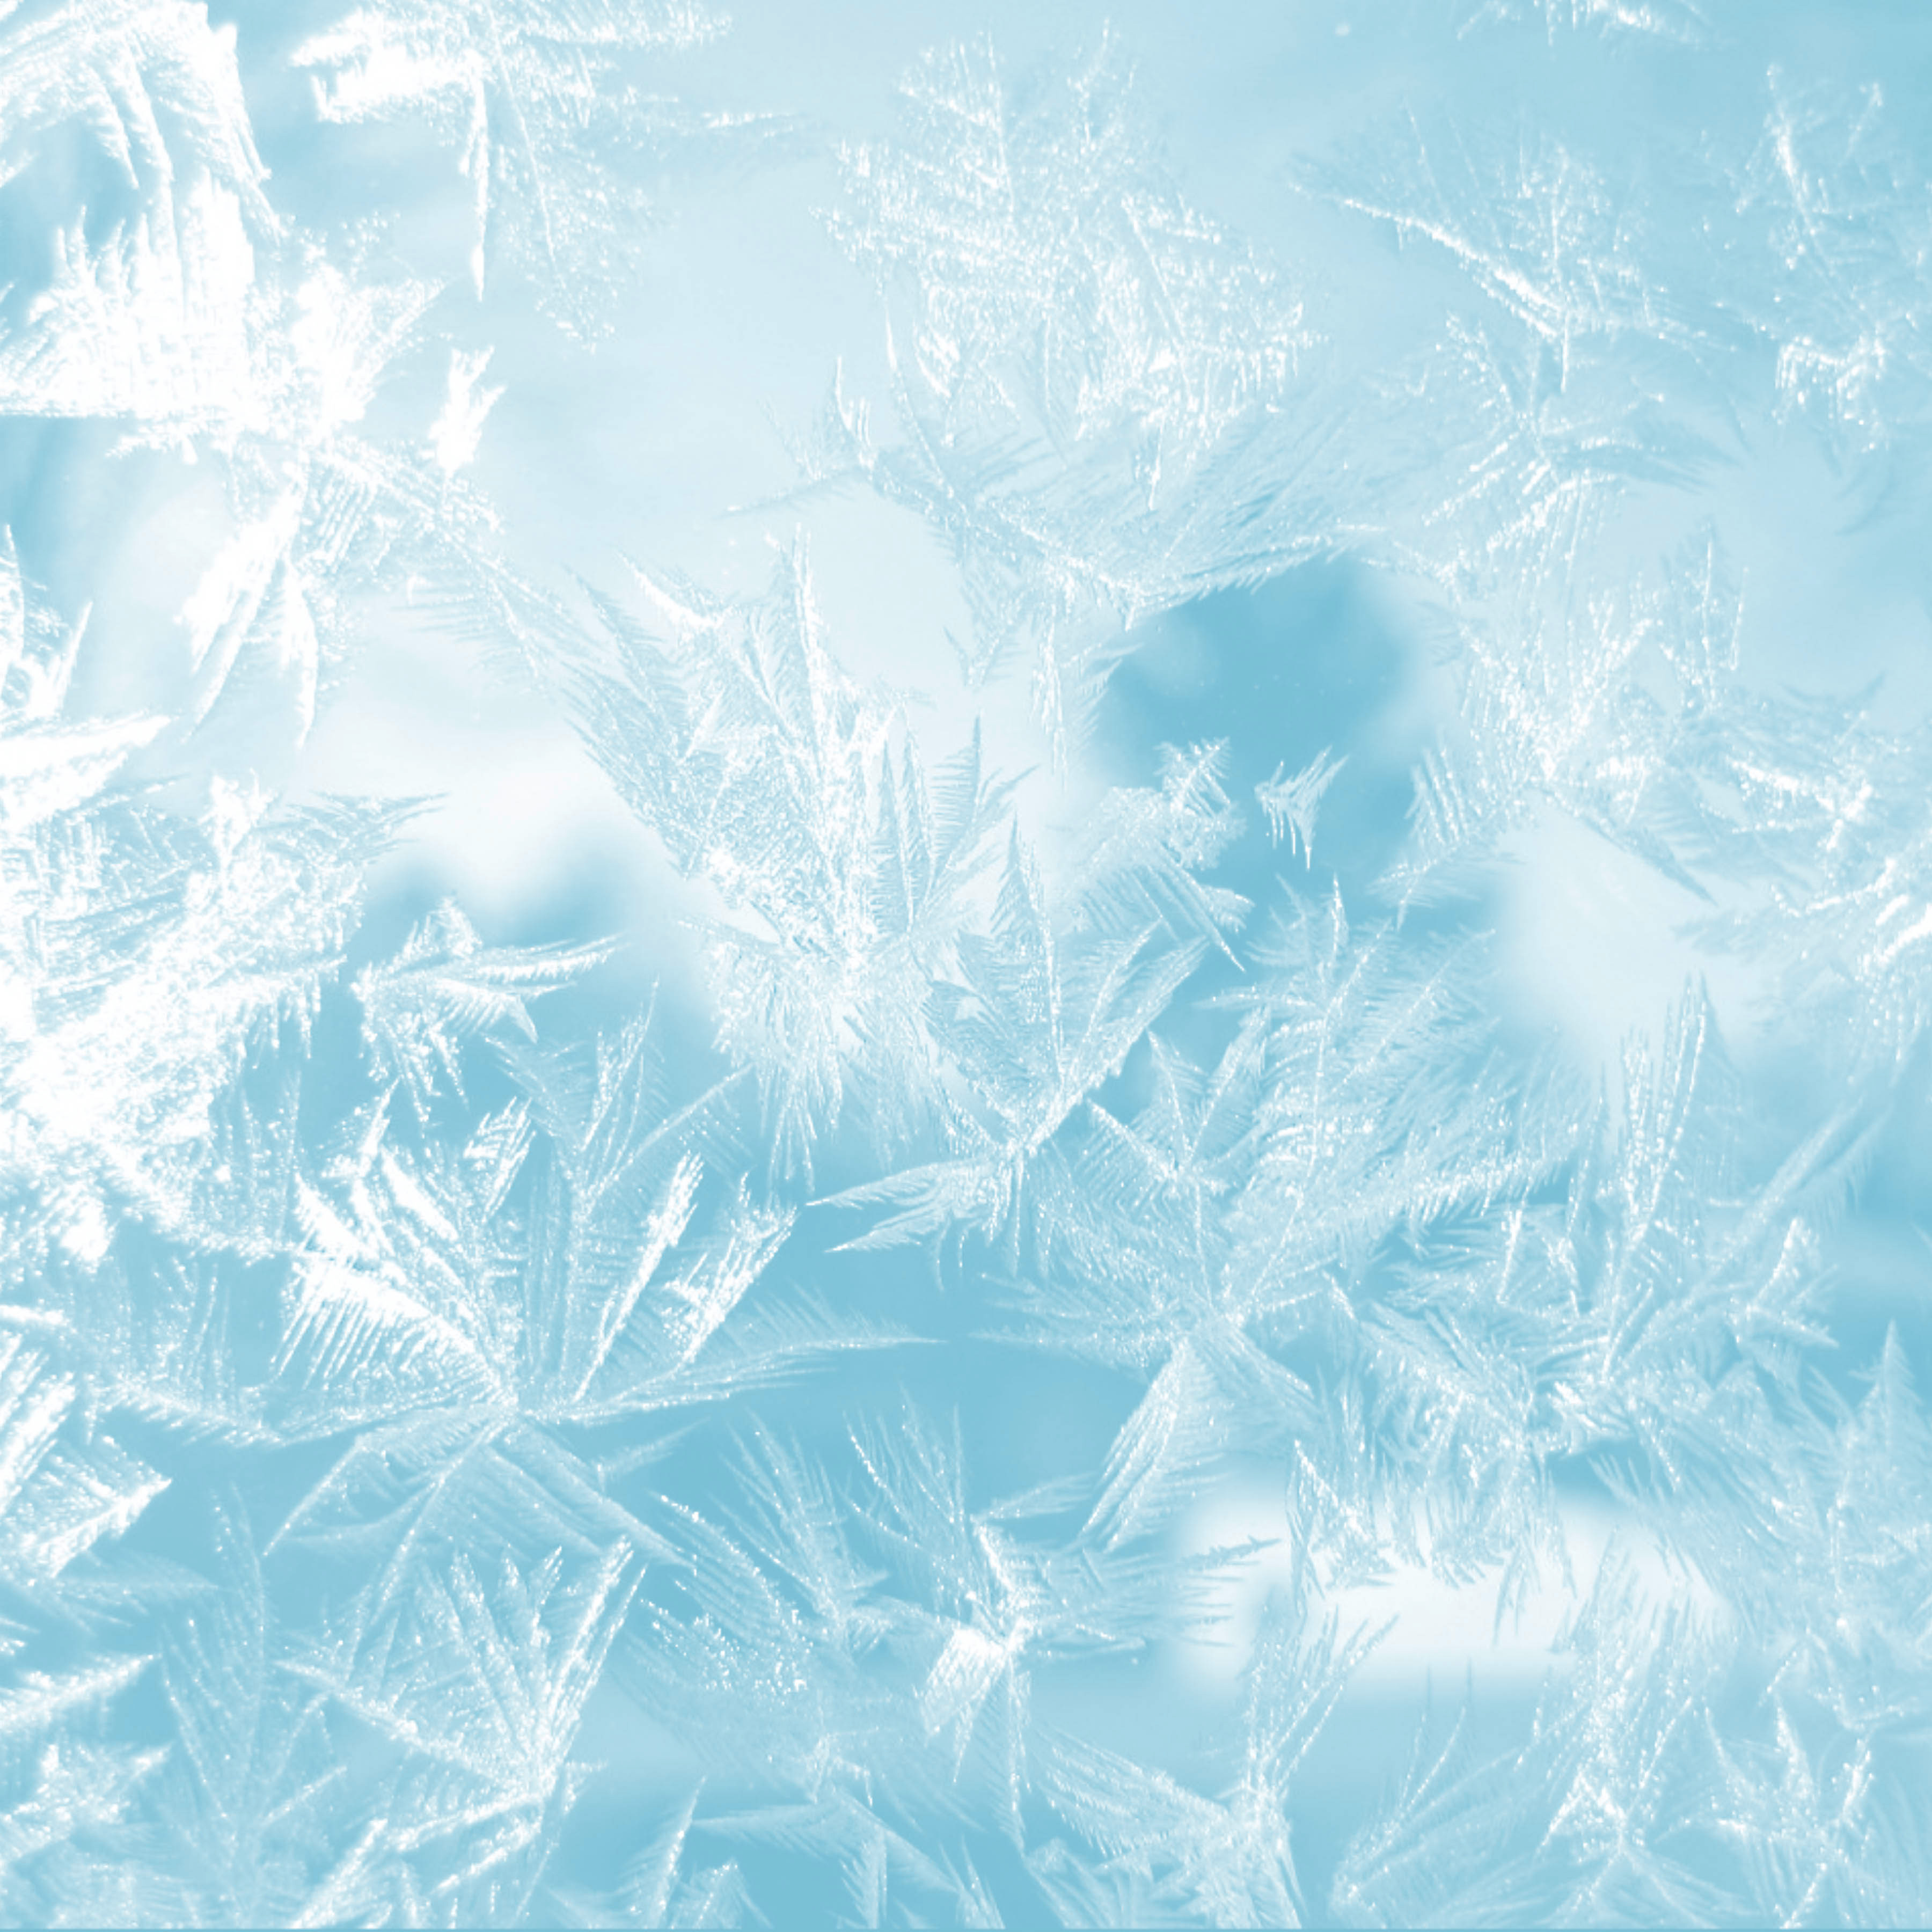 Frozen_Icy_Background.jpg?m=1432121764